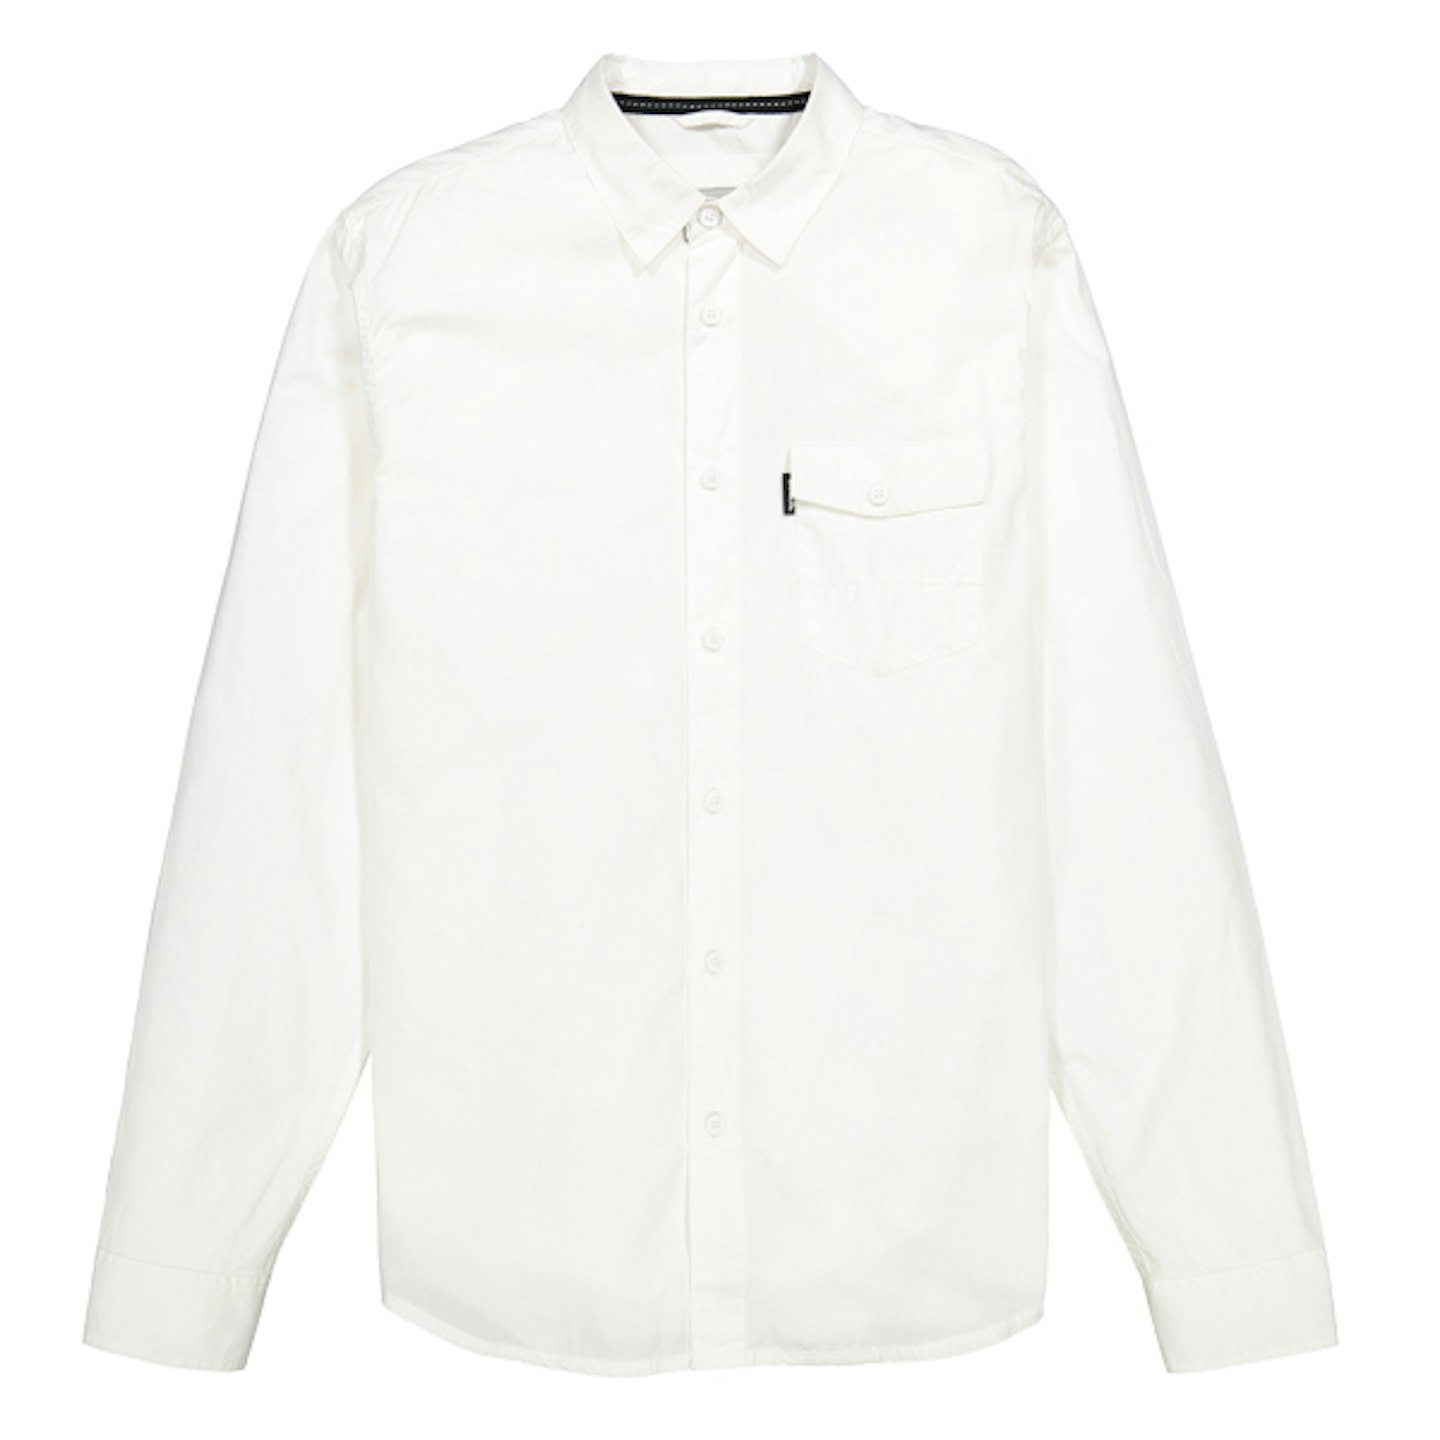 Bench white shirt for summer smart